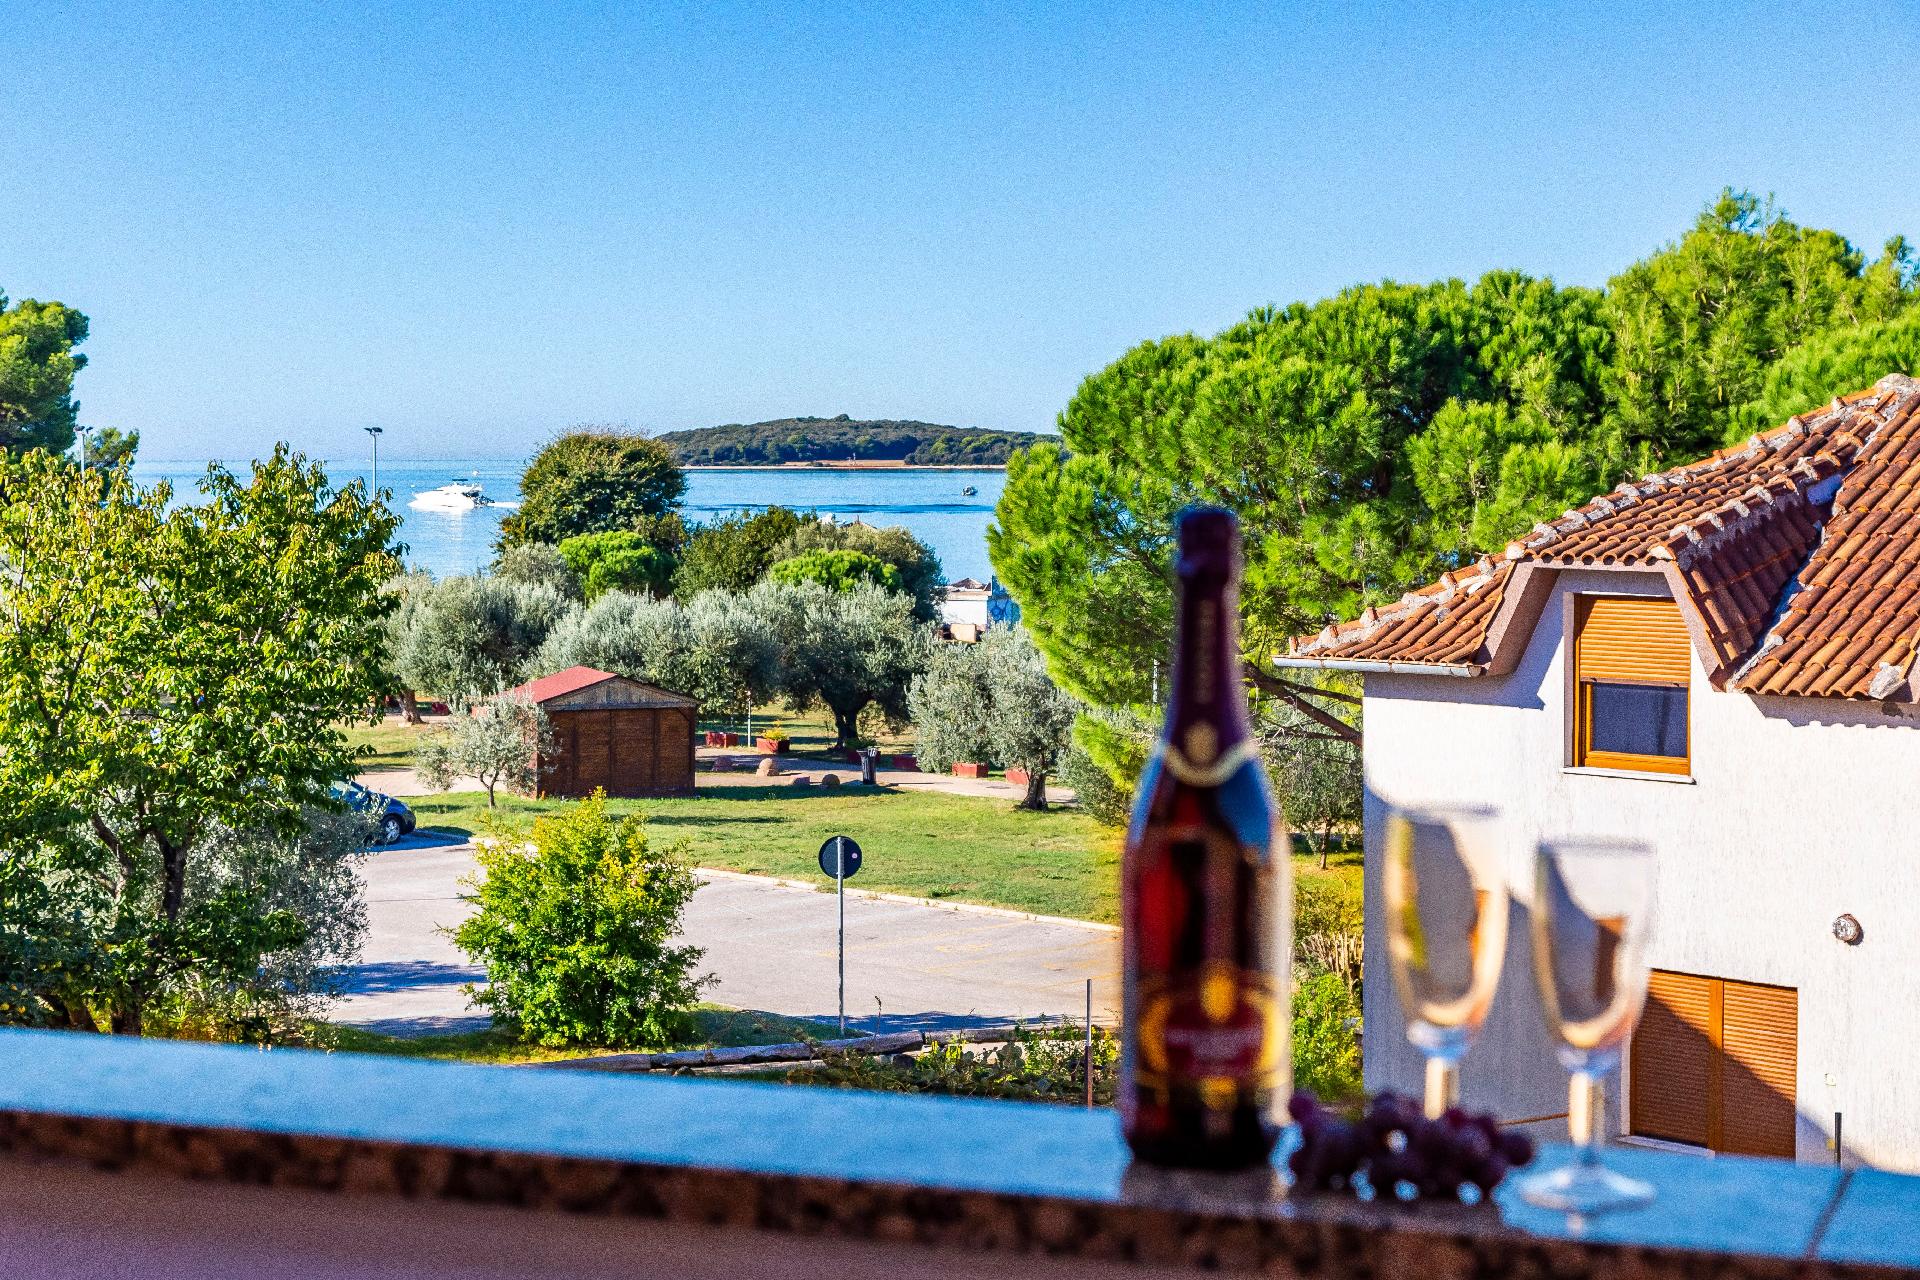 Ferienapartment mit zwei Balkonen für drei bi Ferienhaus in Kroatien